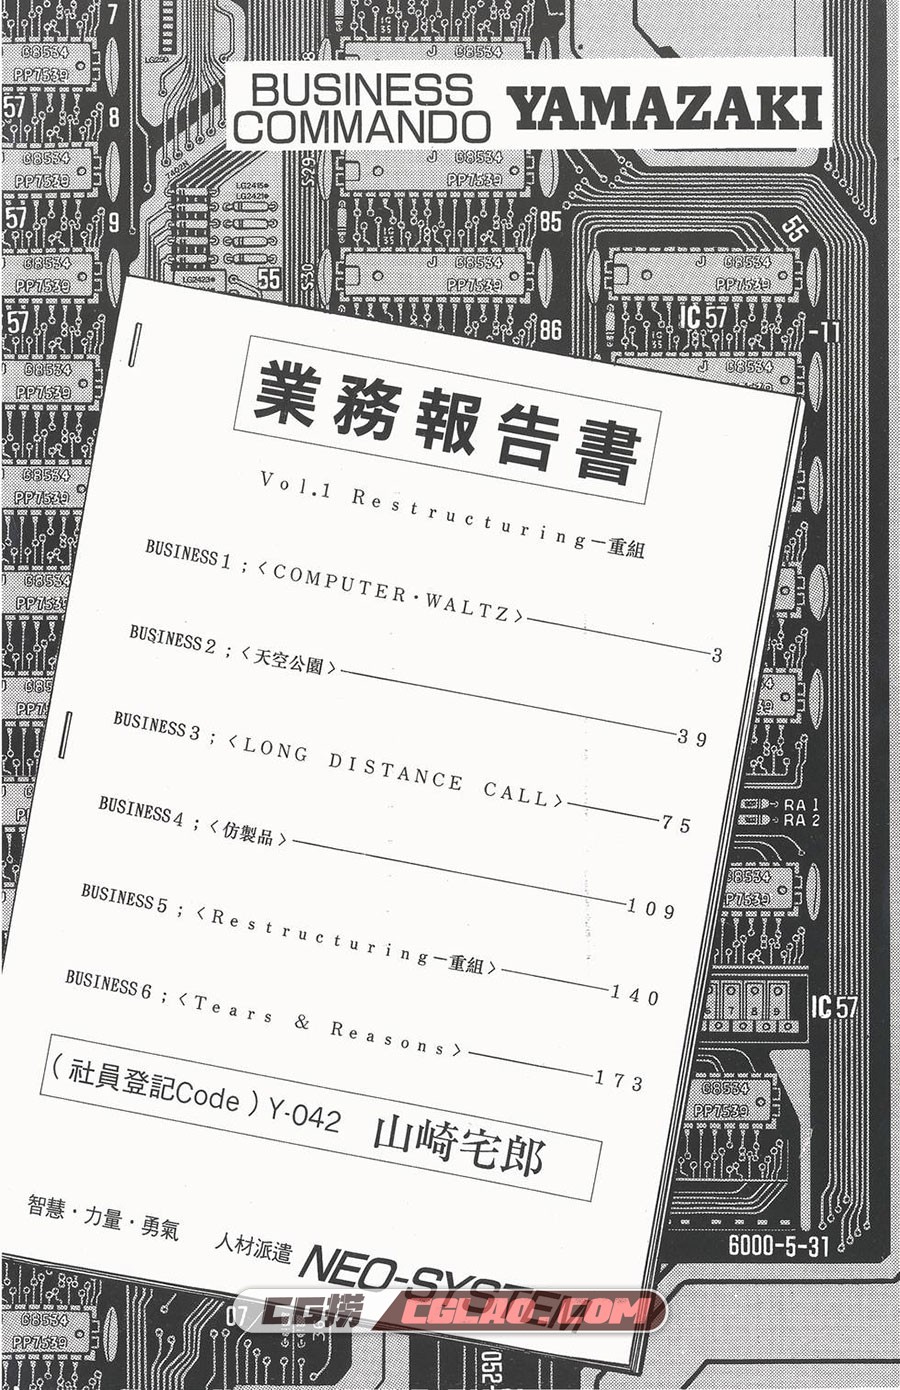 企业战士 富泽顺 1-12卷 漫画完结全集下载 百度网盘,0003.jpg